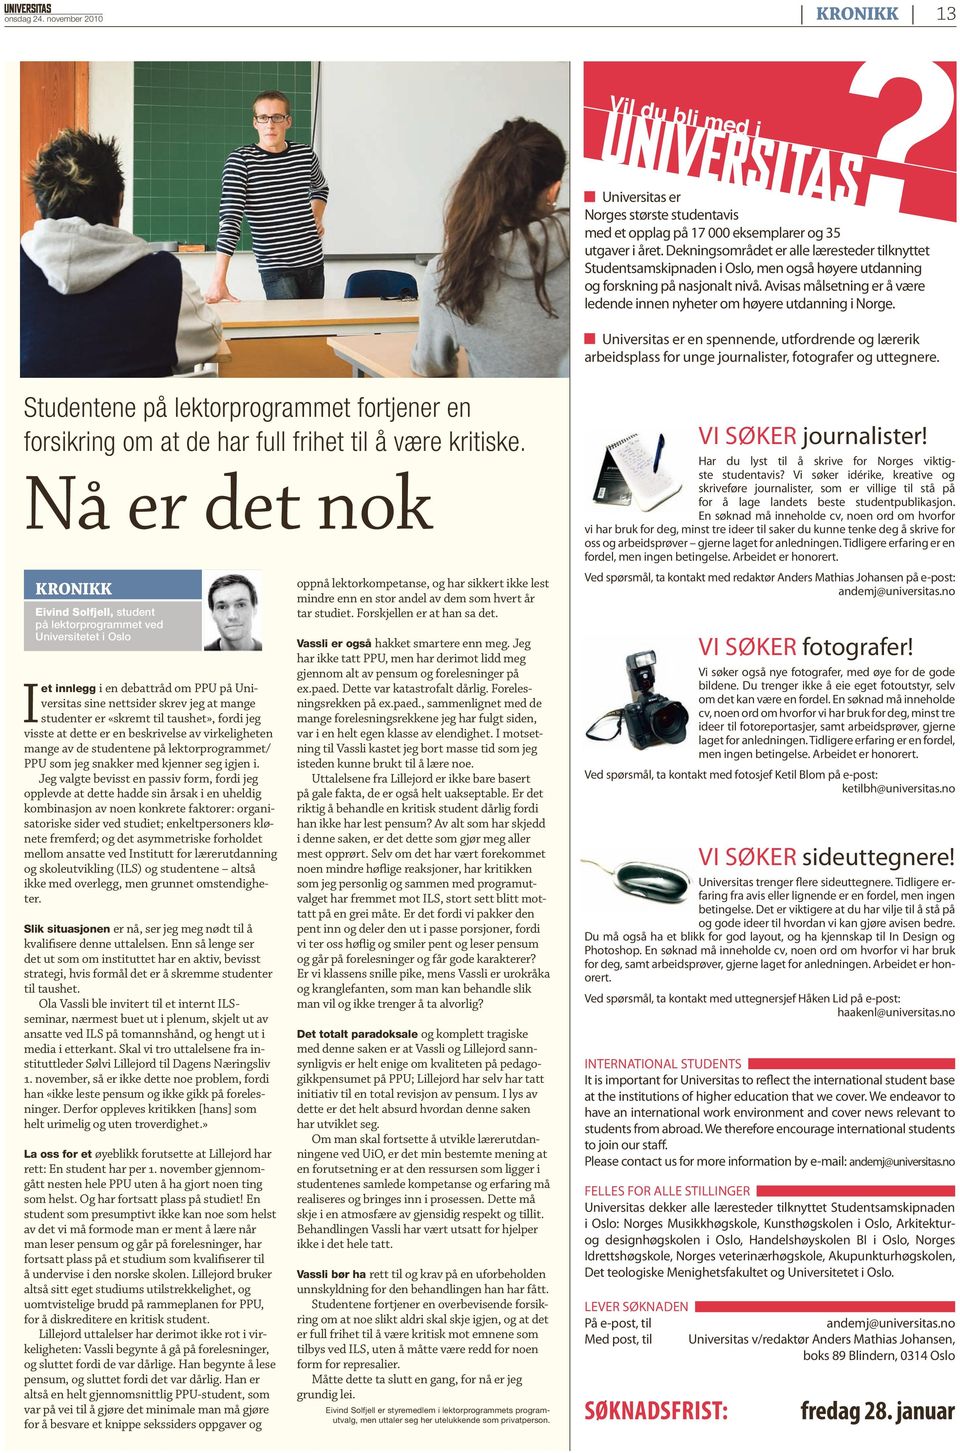 Avisas målsetning er å være ledende innen nyheter om høyere utdanning i Norge. Universitas er en spennende, utfordrende og lærerik arbeidsplass for unge journalister, foto grafer og uttegnere.